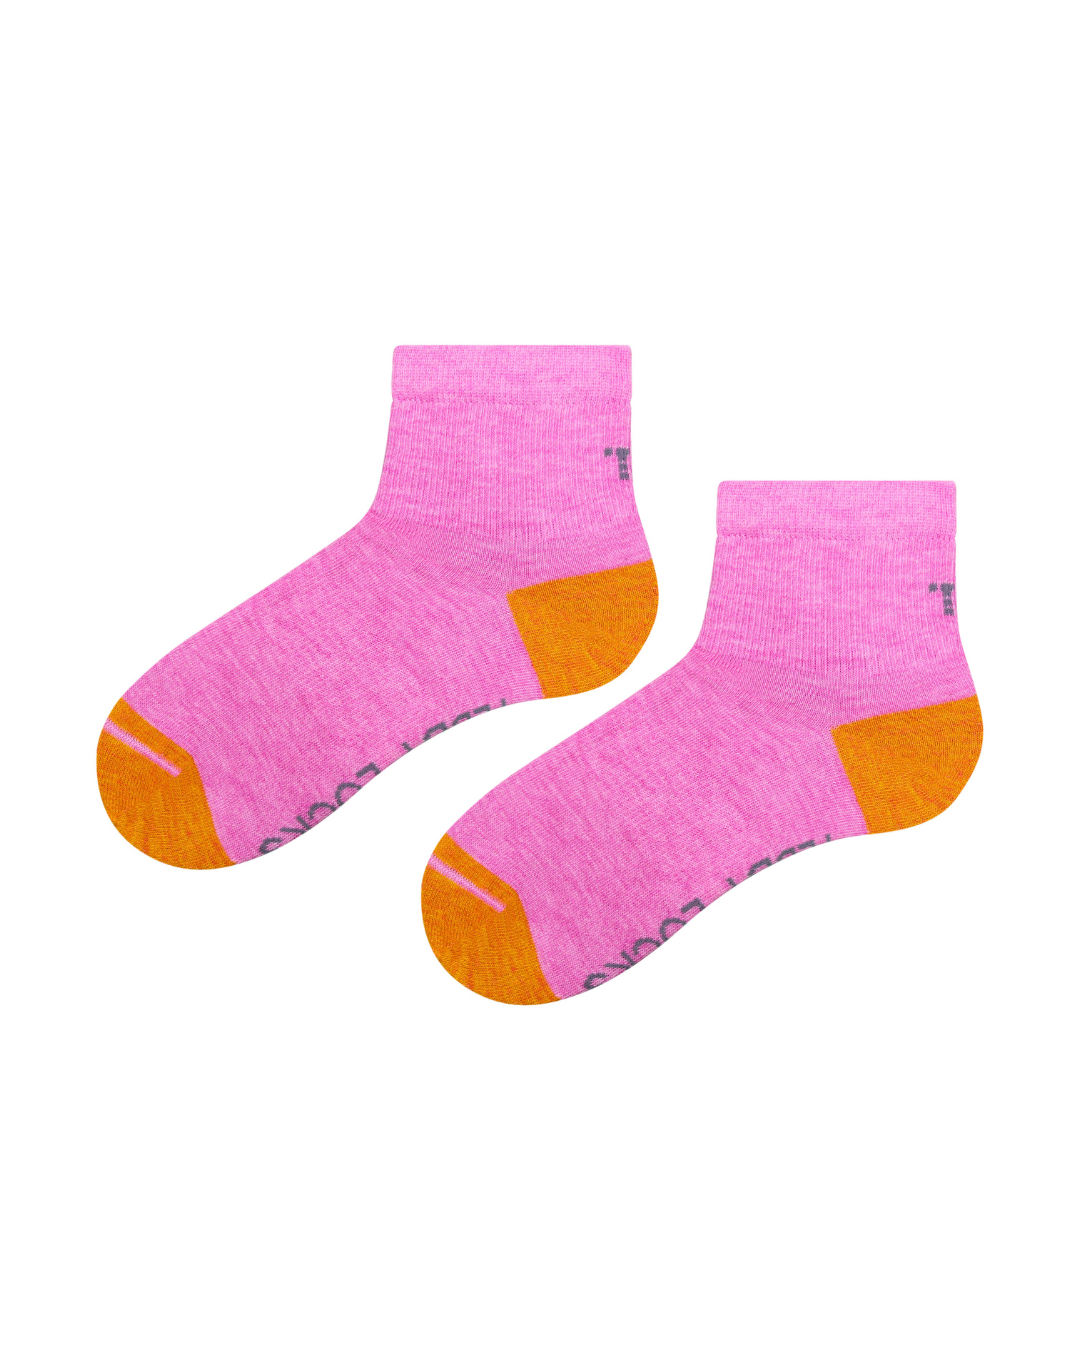 Pink quarter length sock. Sport sock, athletic sock, ankle length seamless toe socks